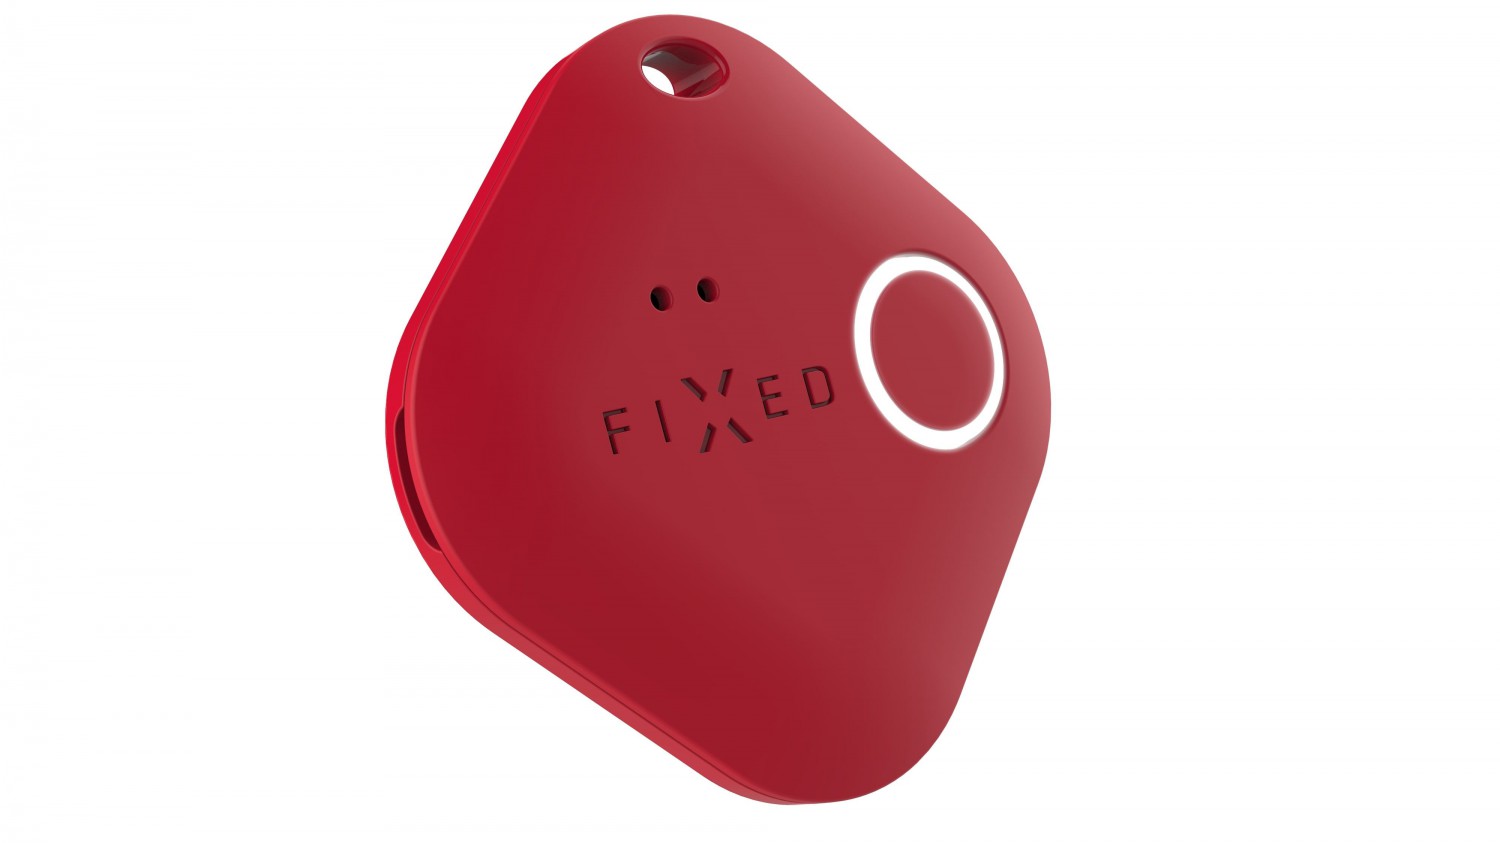 Smart tracker FIXED Smile PRO, 4-PACK, černý, bílý, modrý, červená